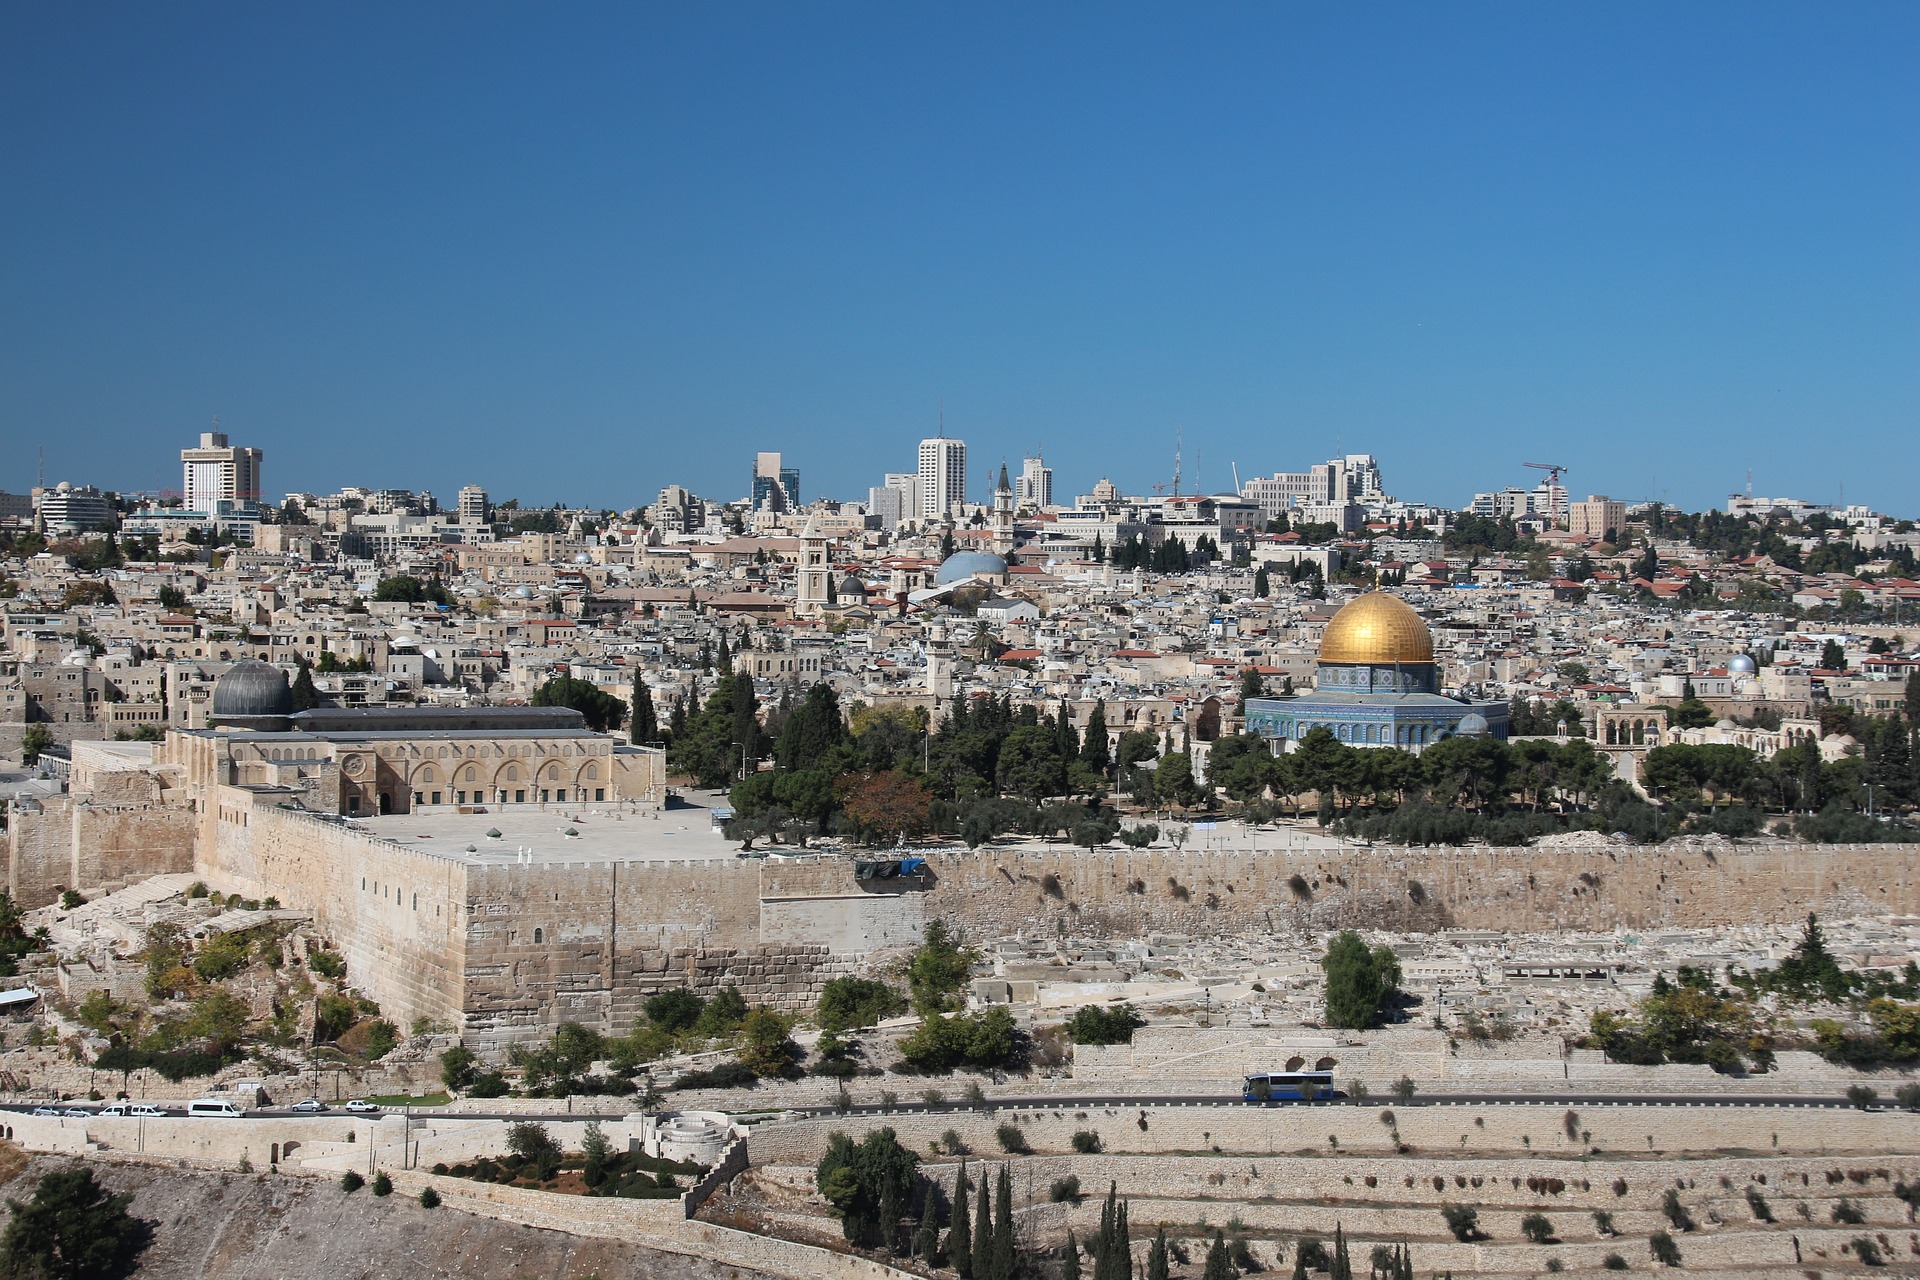 איפה ניתן למצוא הופעות בירושלים?